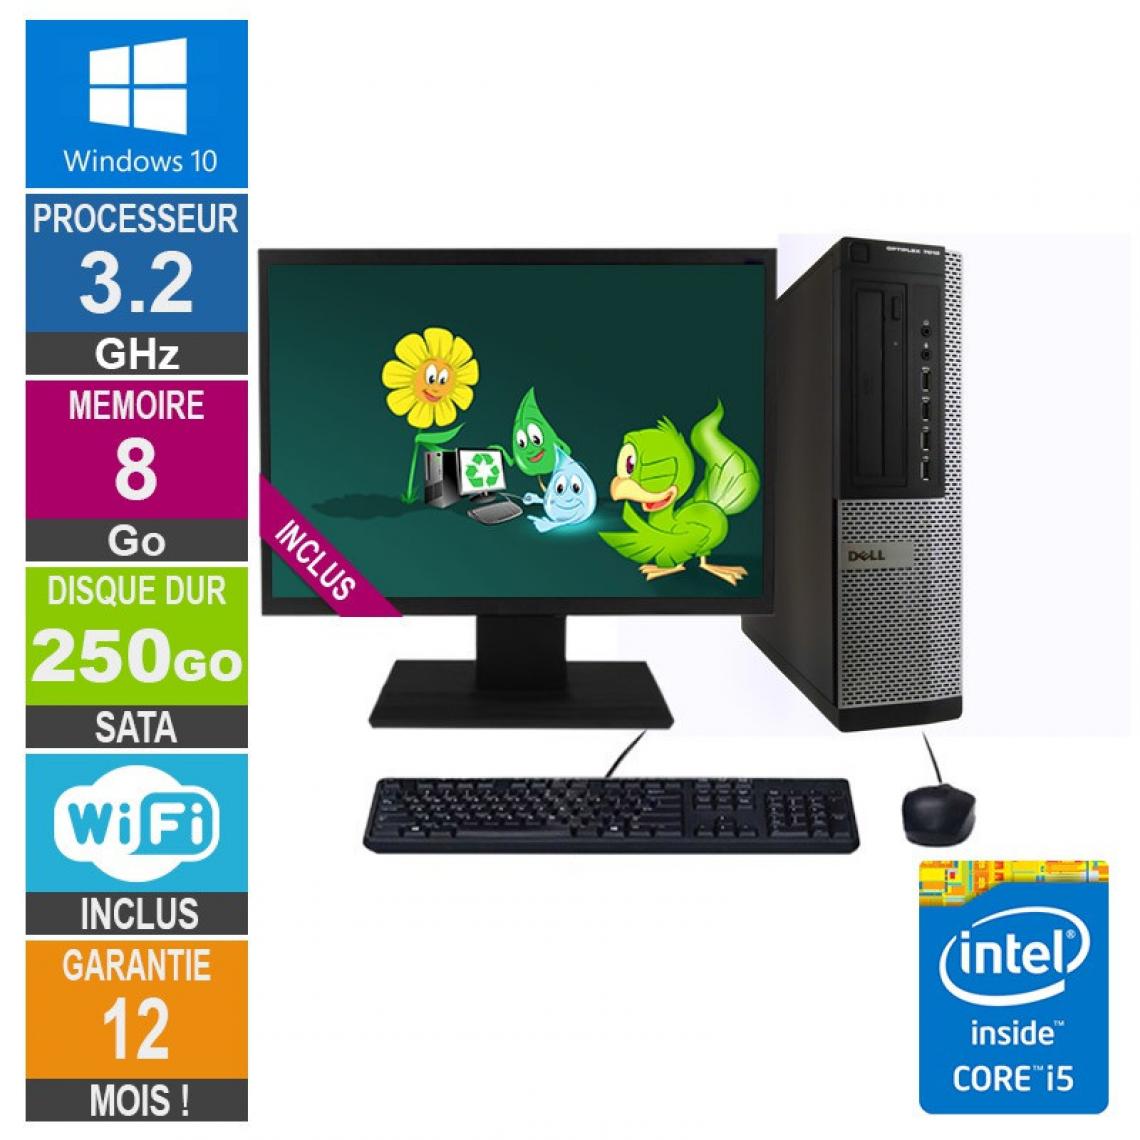 Dell - PC Dell Optiplex 7010 DT Core i5-3470 3.20GHz 8Go/250Go Wifi W10 + Ecran 19 - PC Fixe